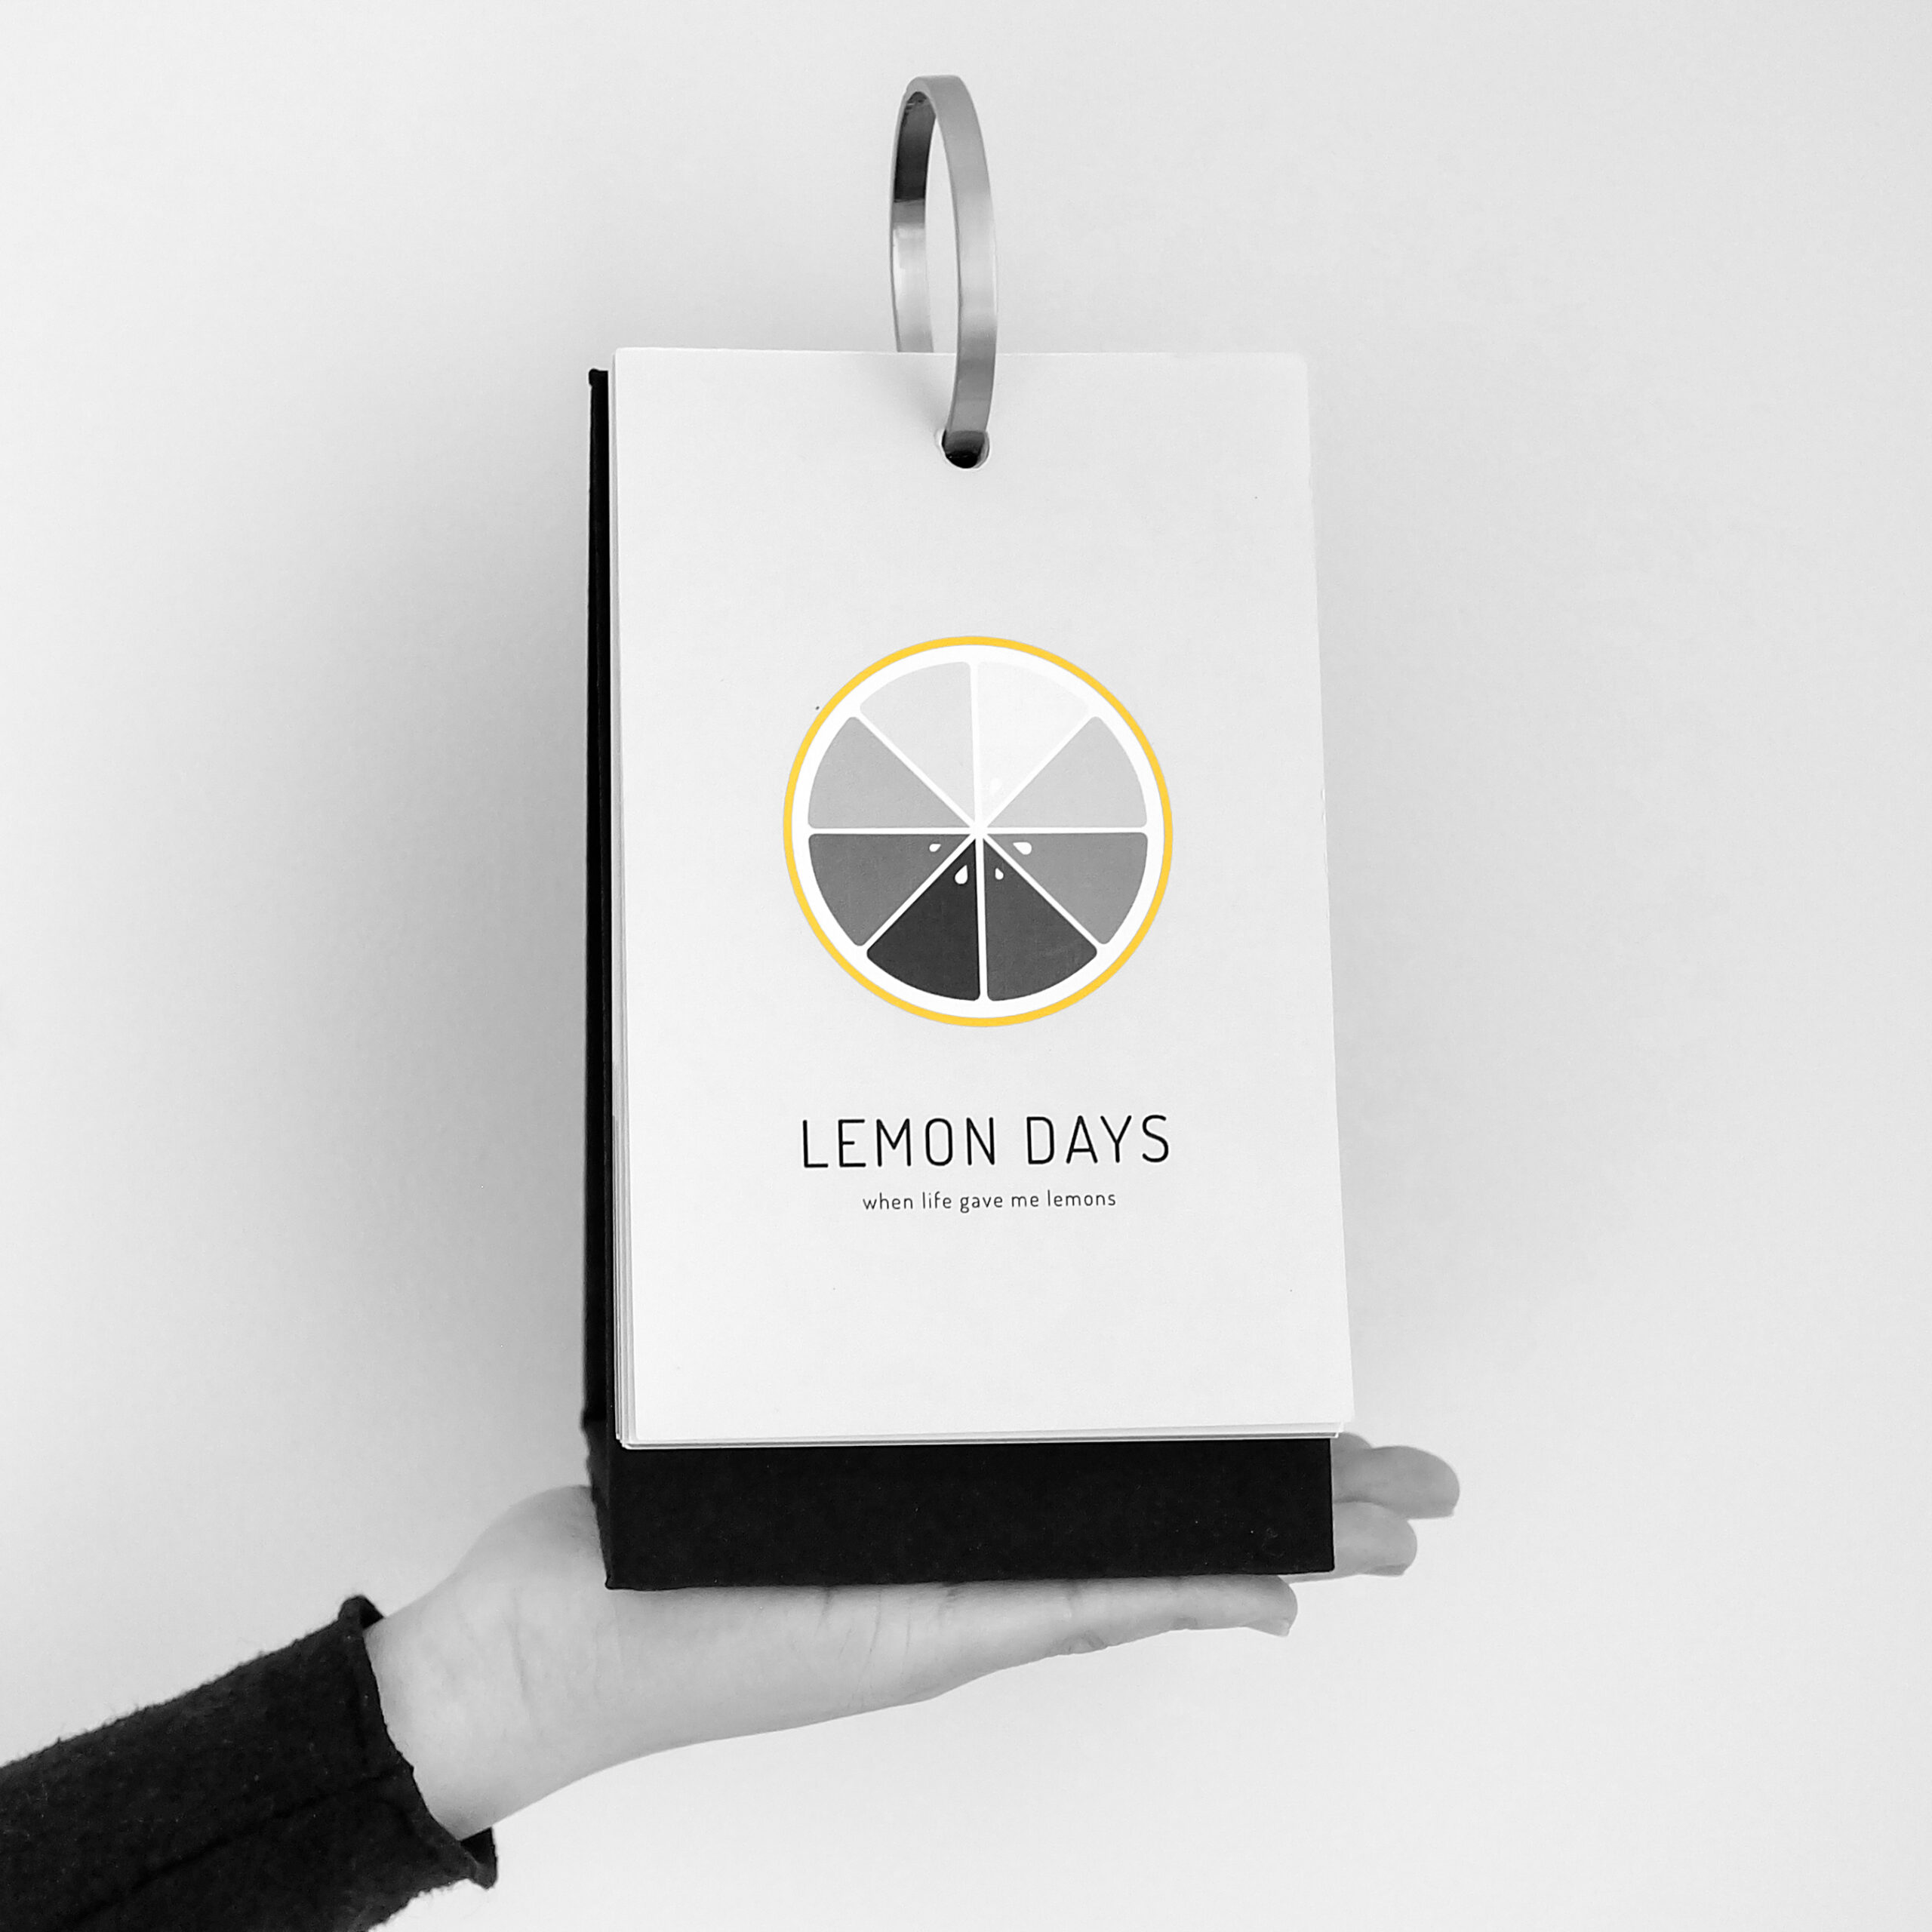 Lemon Days